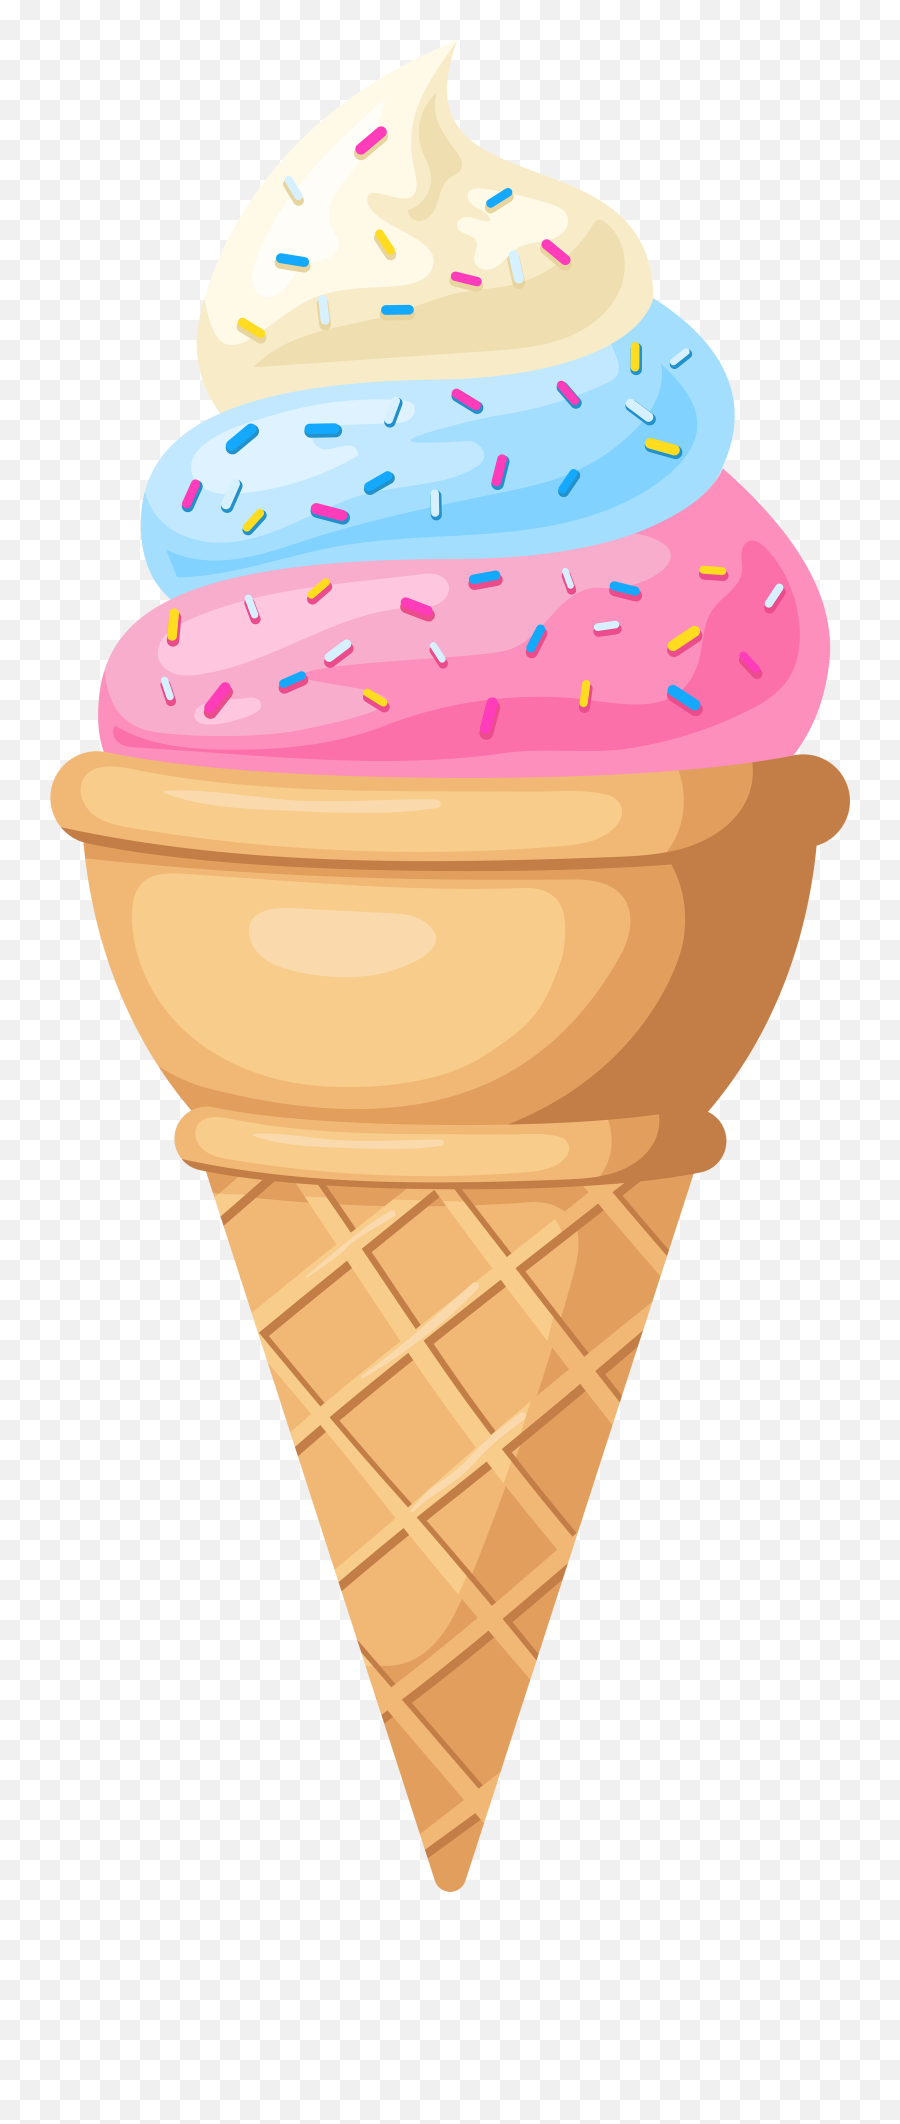 Smiley Clipart Ice Cream Smiley Ice Cream Transparent Free - Cone Ice Cream Images Clip Art Emoji,Ice Cream Sundae Emoji 2